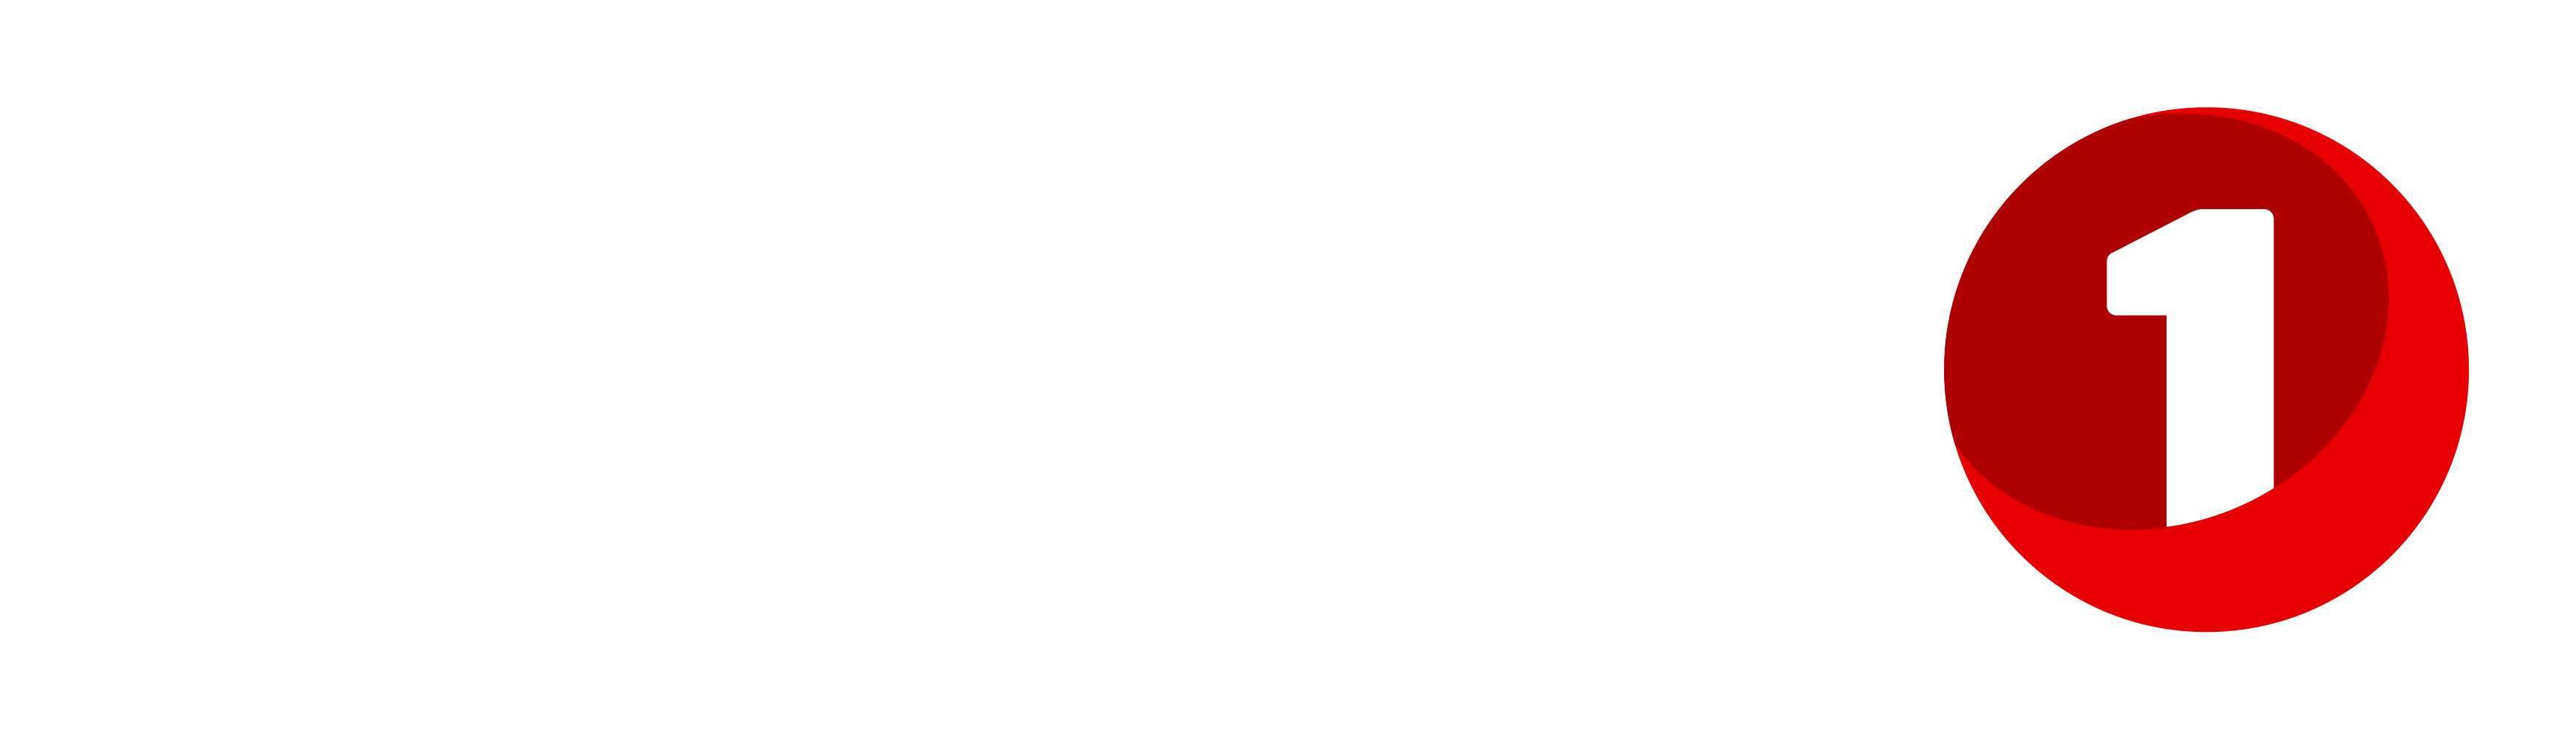 Пятерка тв. Sparebank 1. Пятый канал логотип. Spare Bank Norway логотип. Ned лого.